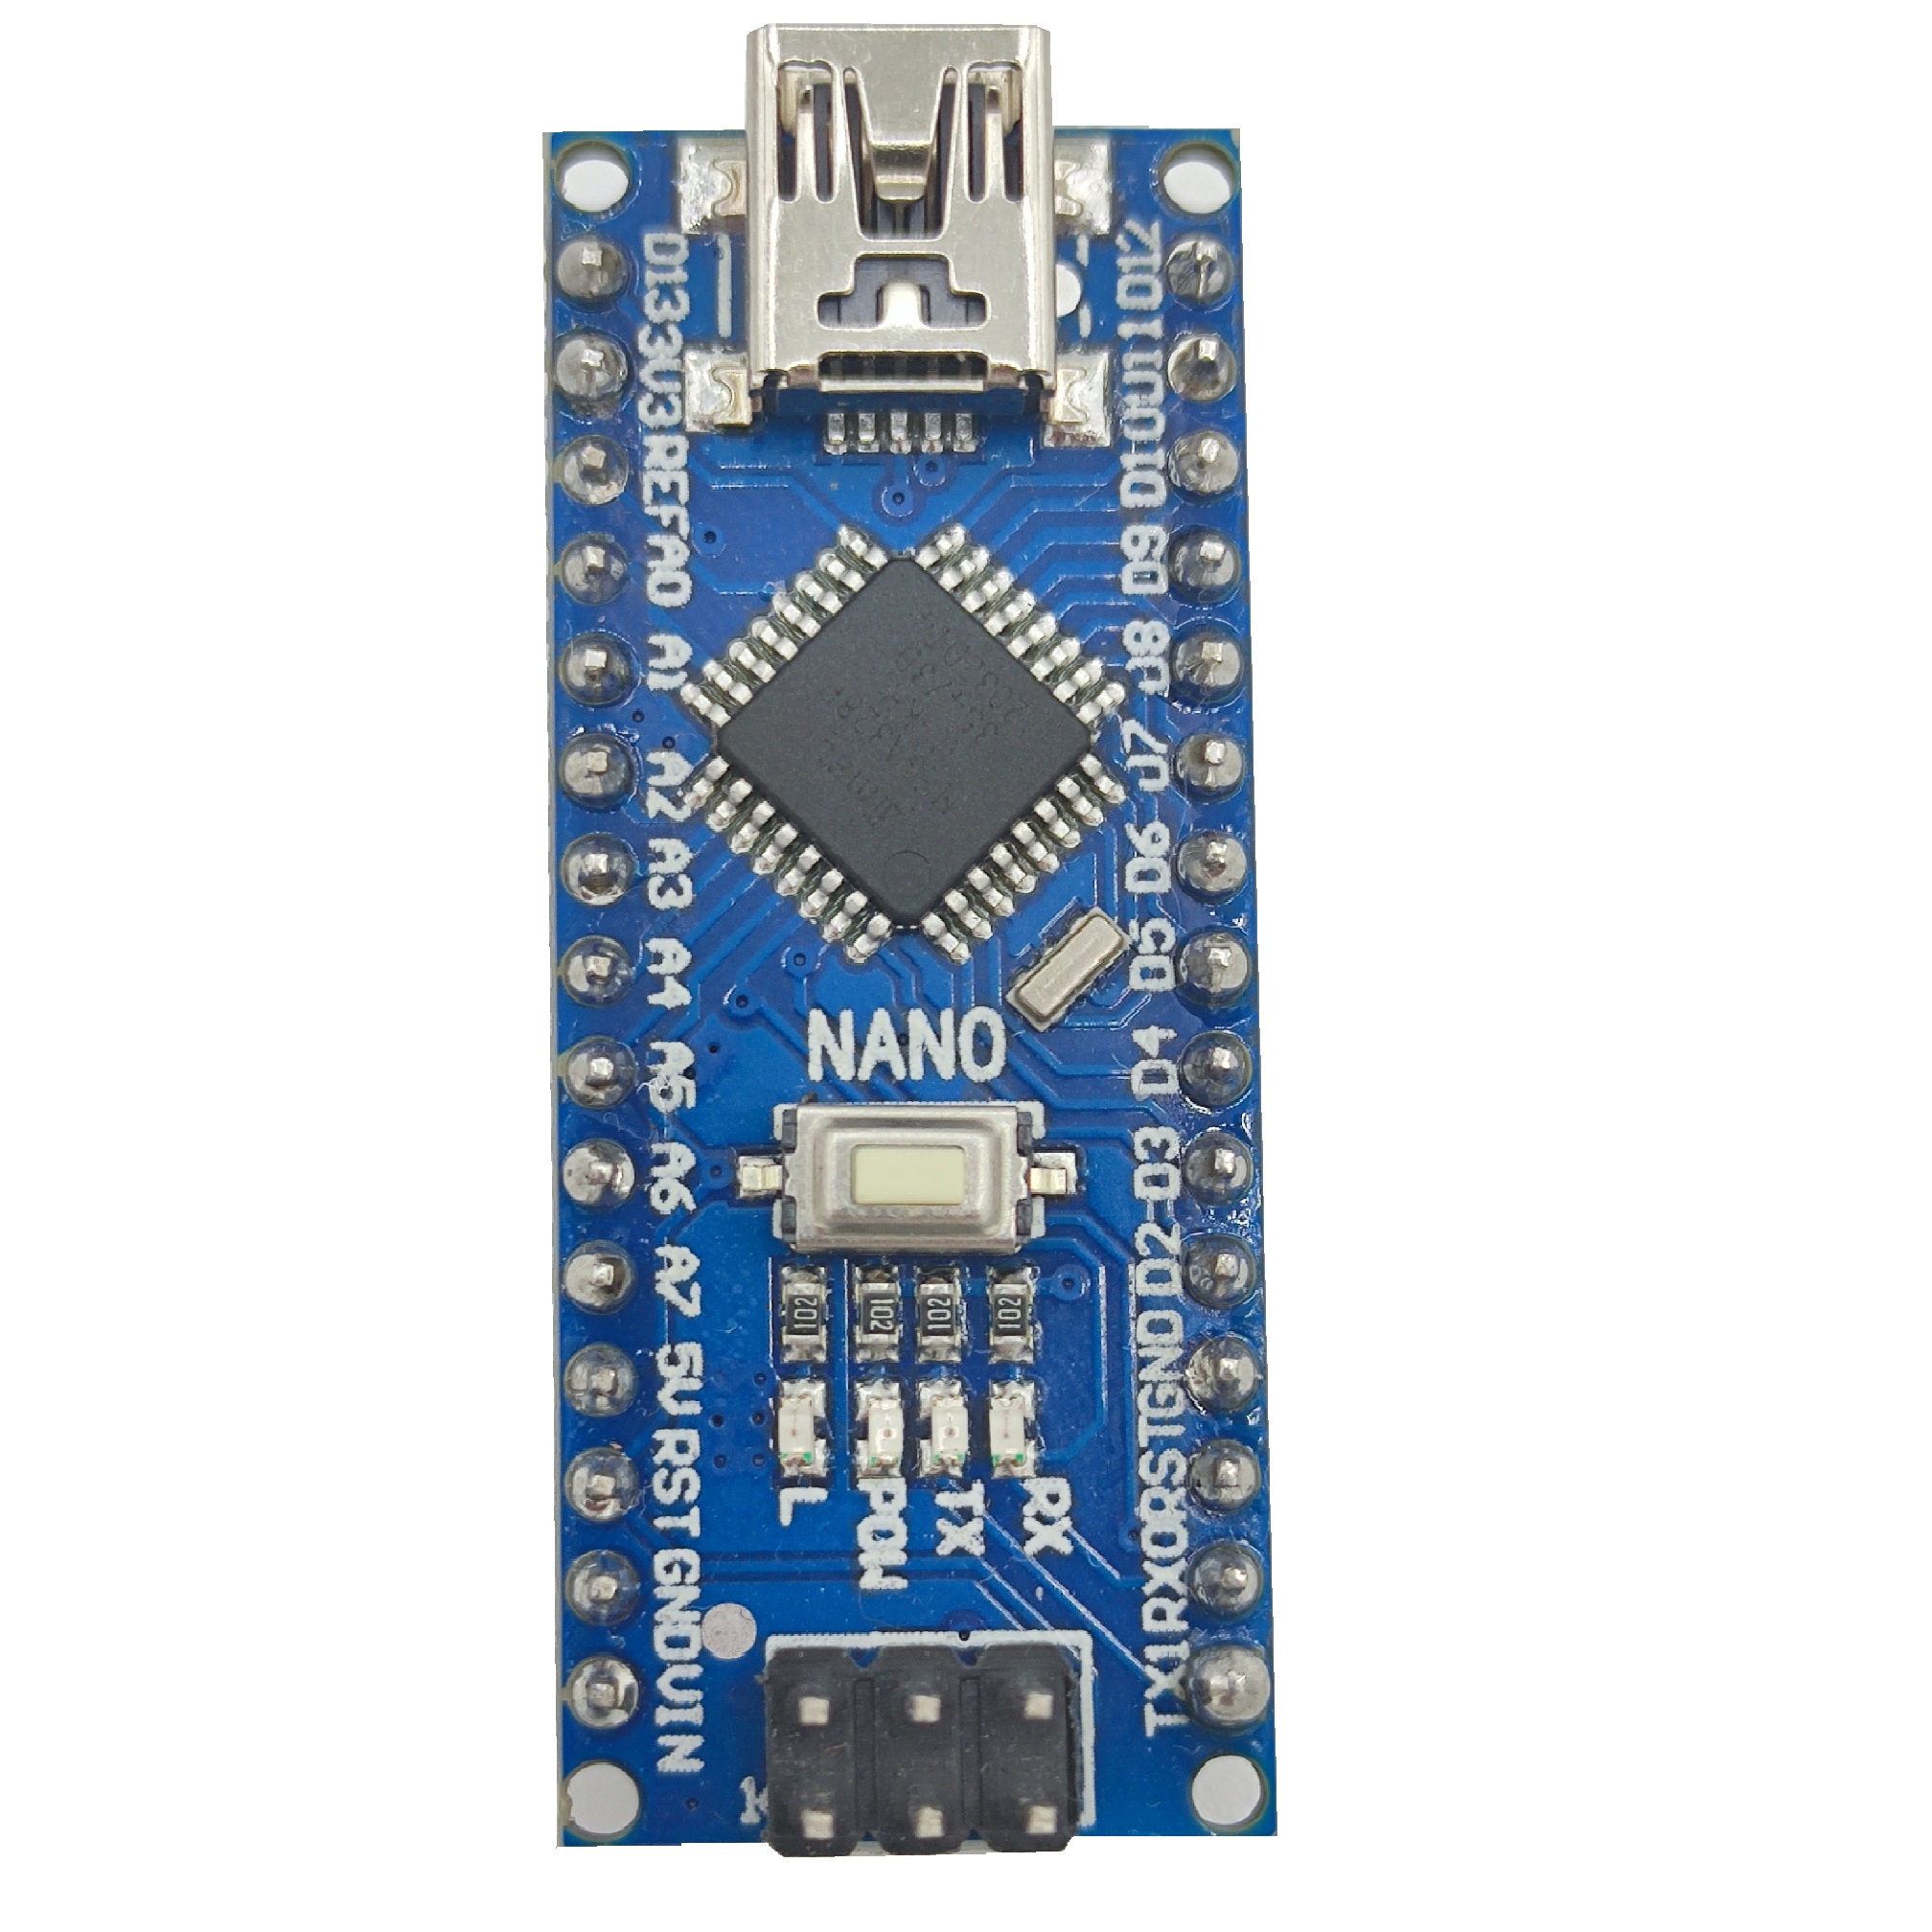 آردوینو نانو | Arduino Nano با مبدل ch340 (با پایه های لحیم شده)